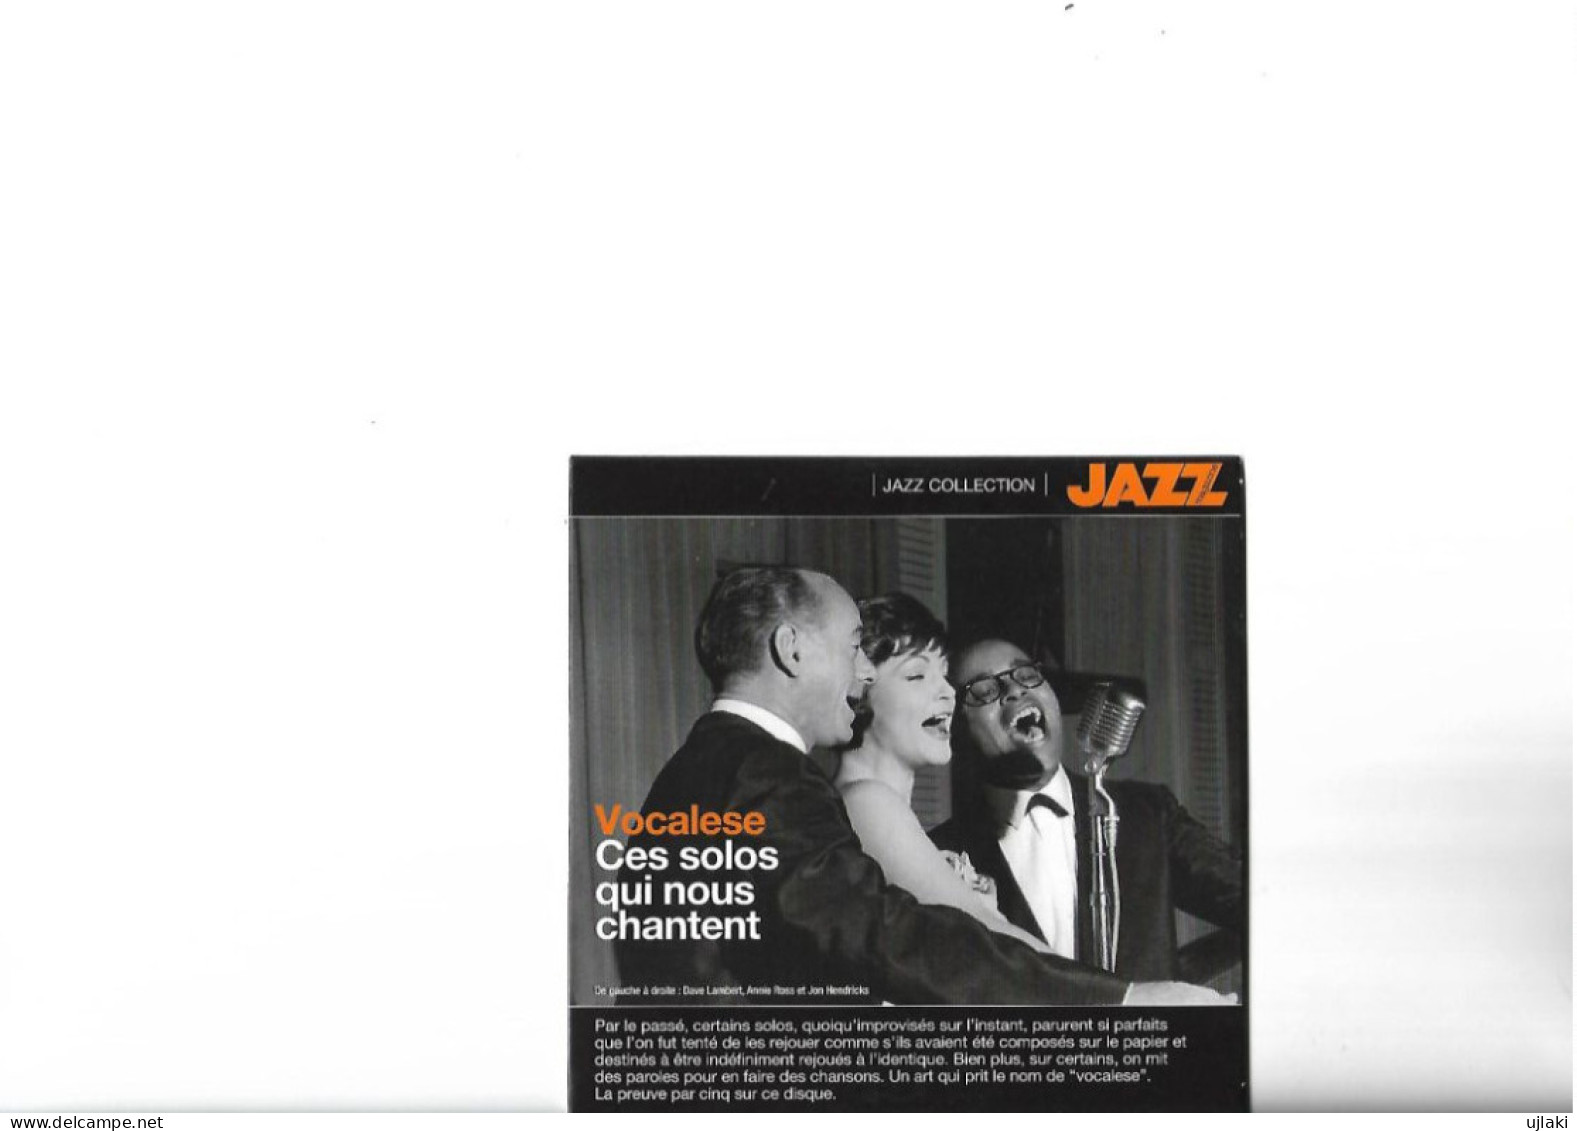 Revue  JAZZ  Magazine   N°701 DECEMBRE 2017 Et JANVIER 2018 "50 Voix 50 Chansons"(numéro Spécial) - Musica